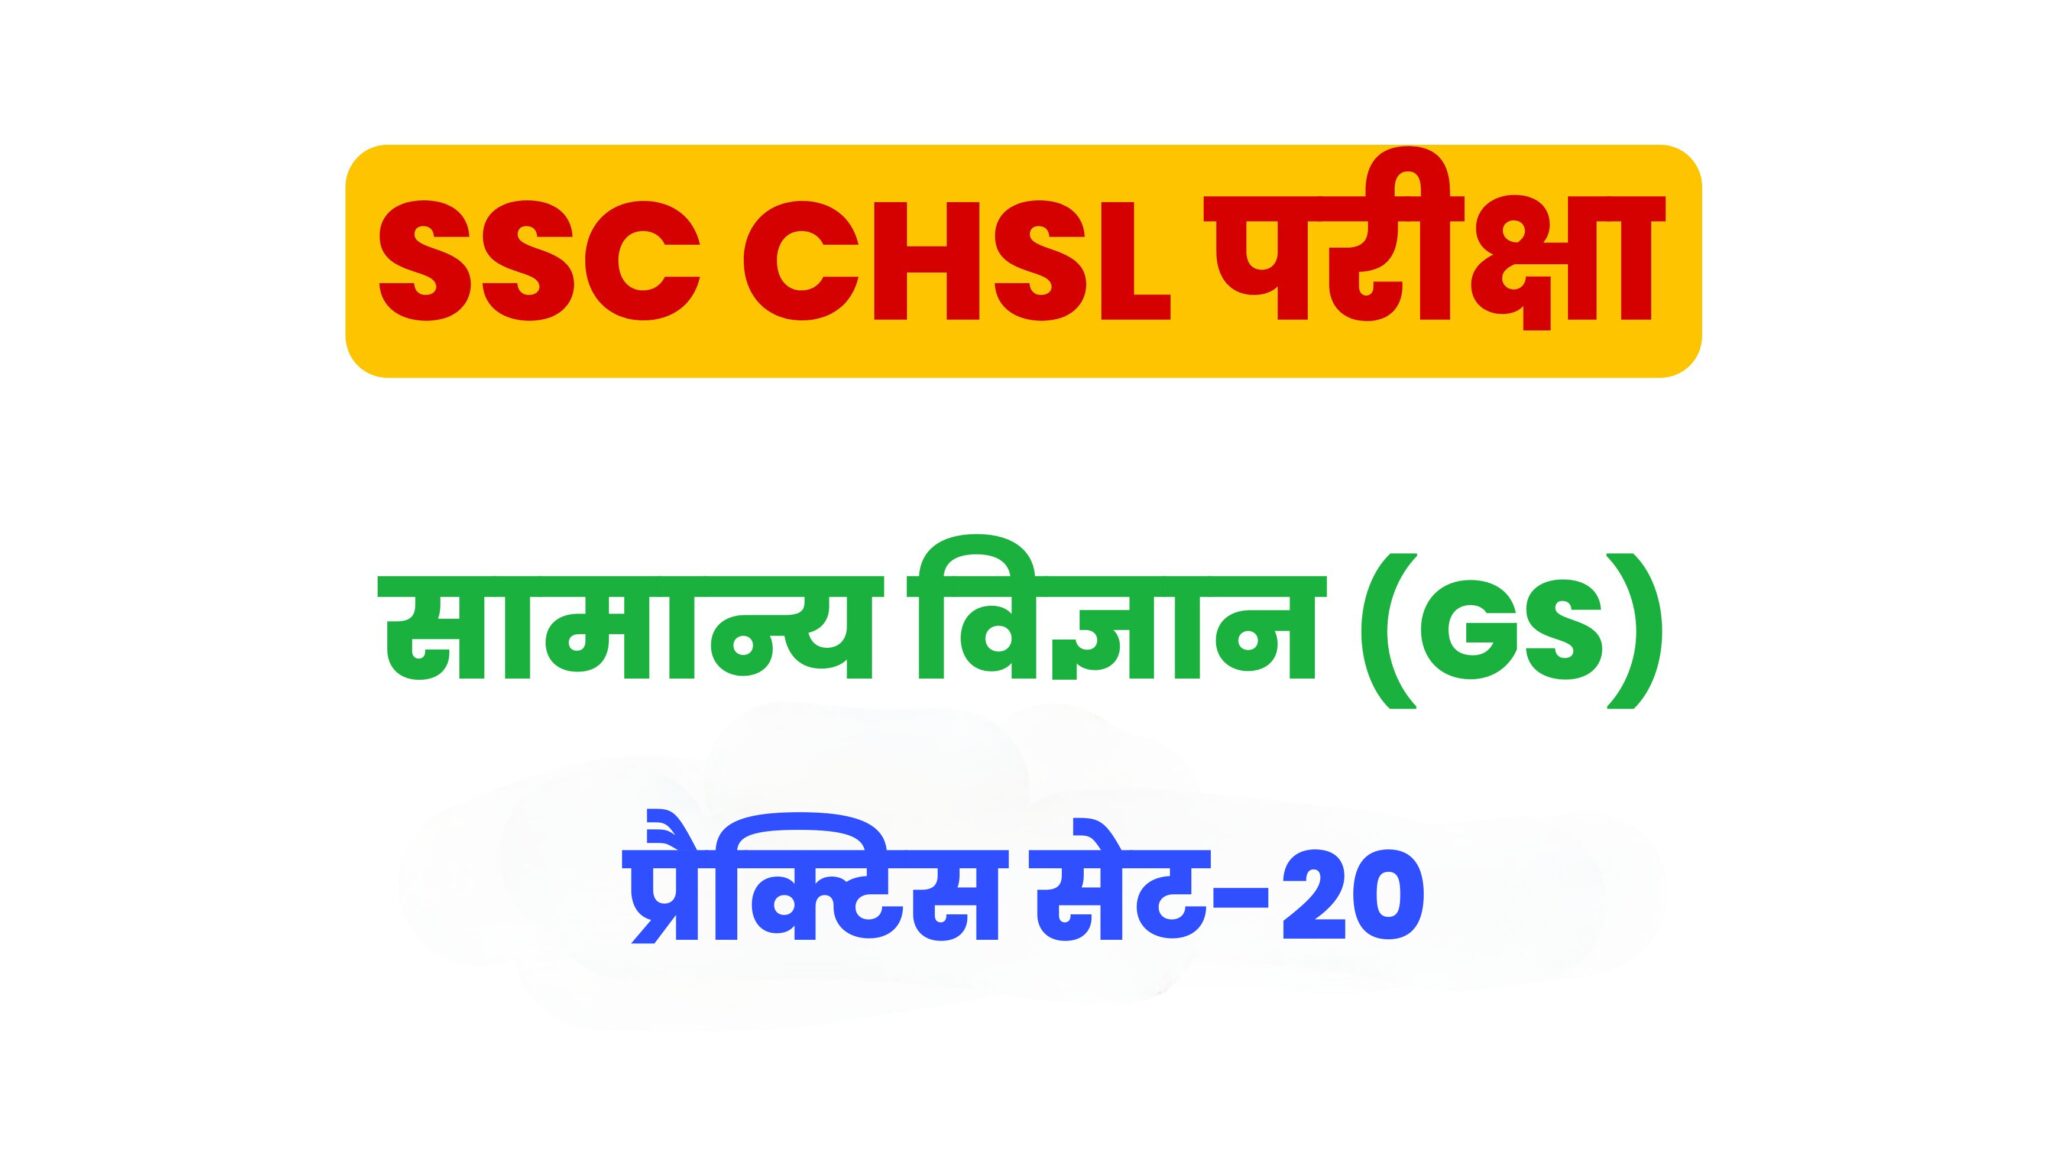 SSC CHSL General Science  प्रैक्टिस सेट 20 : सामान्य विज्ञान के 25 बेहद महत्वपूर्ण प्रश्न